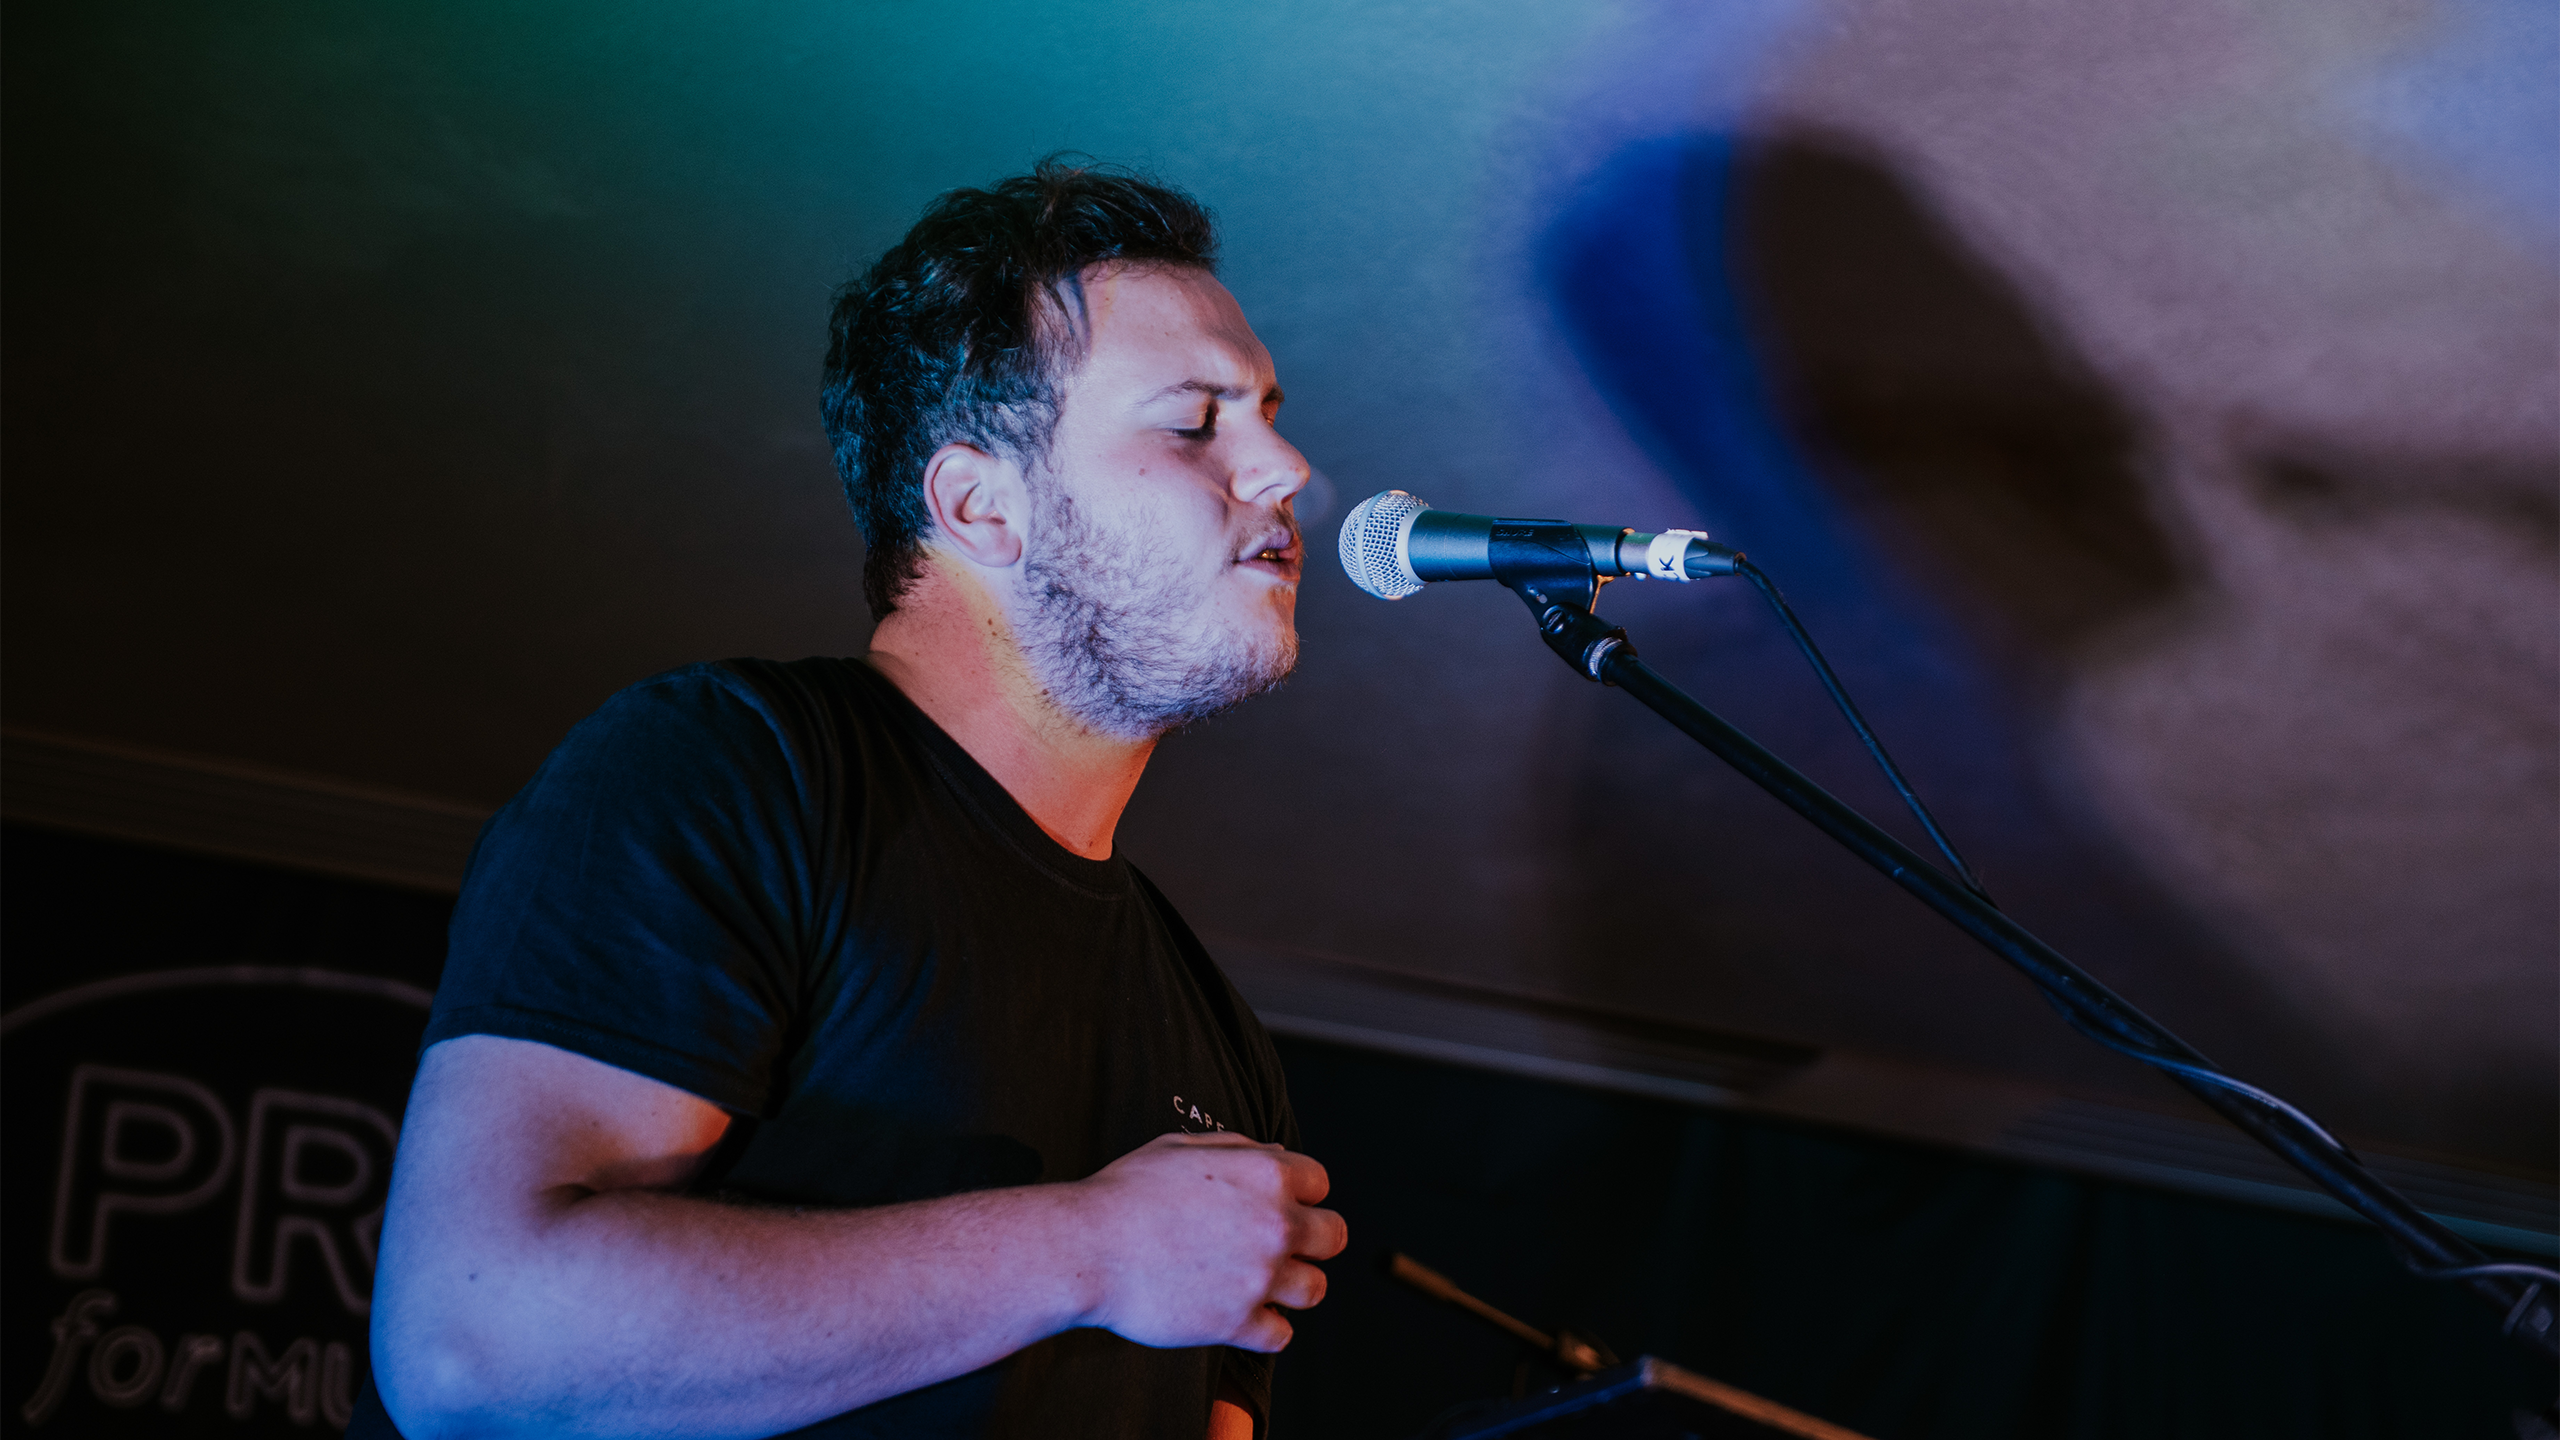 Dylan Cartlidge performs at PRS presents November 2018